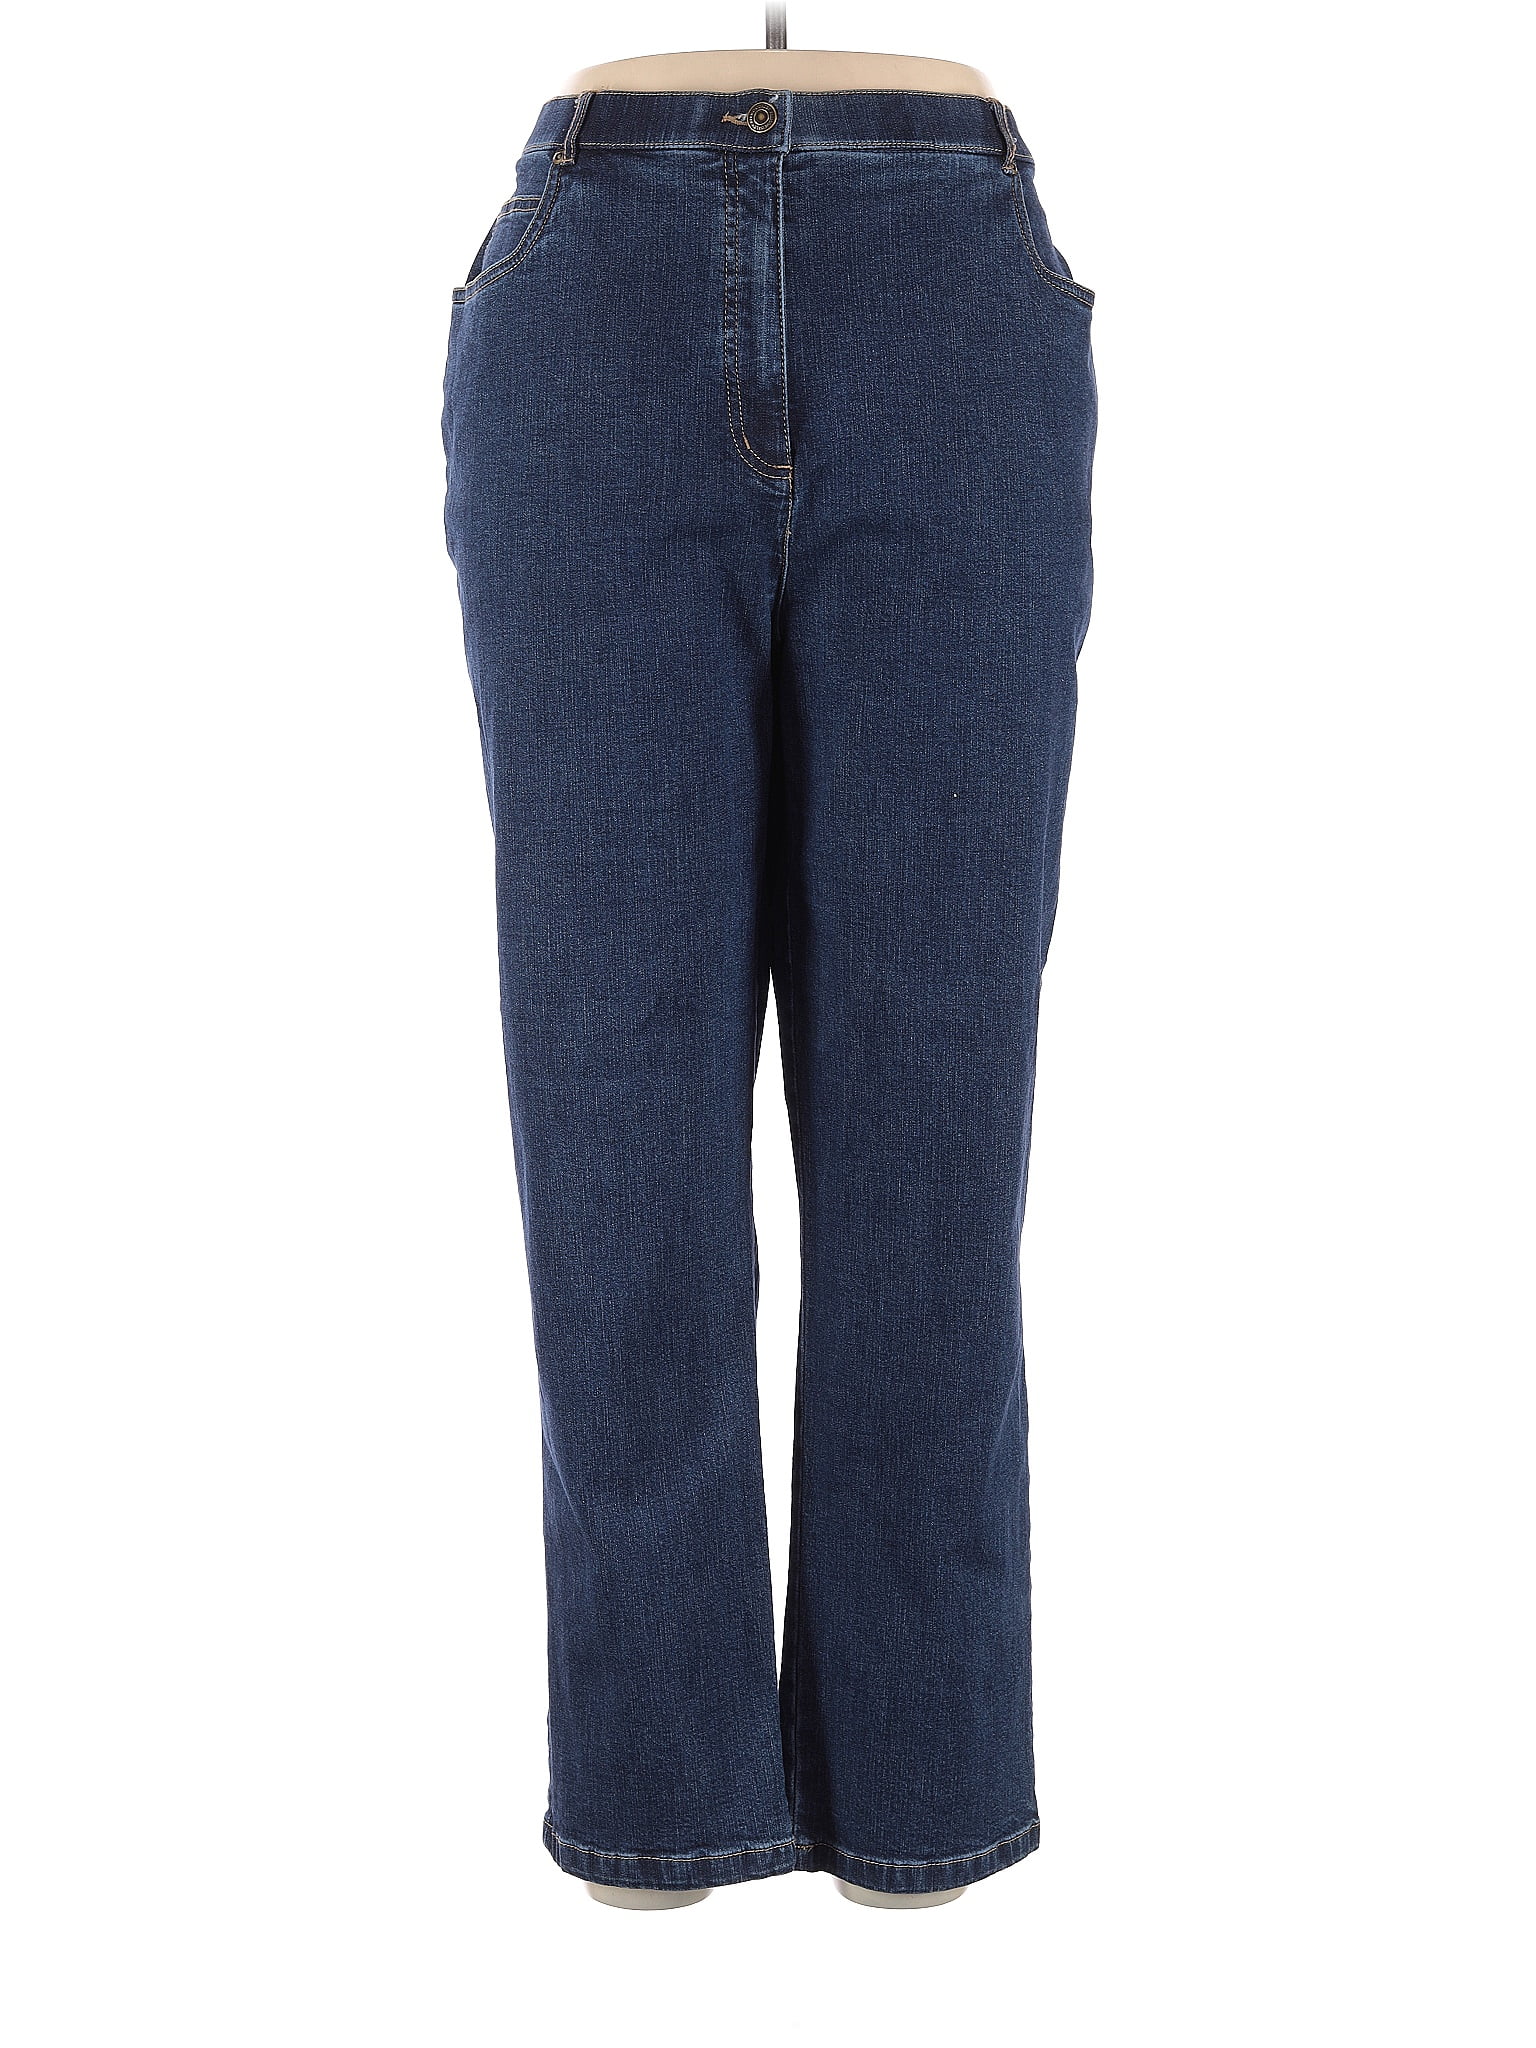 Allison Daley Solid Blue Jeans Size 16 - 47% off | thredUP